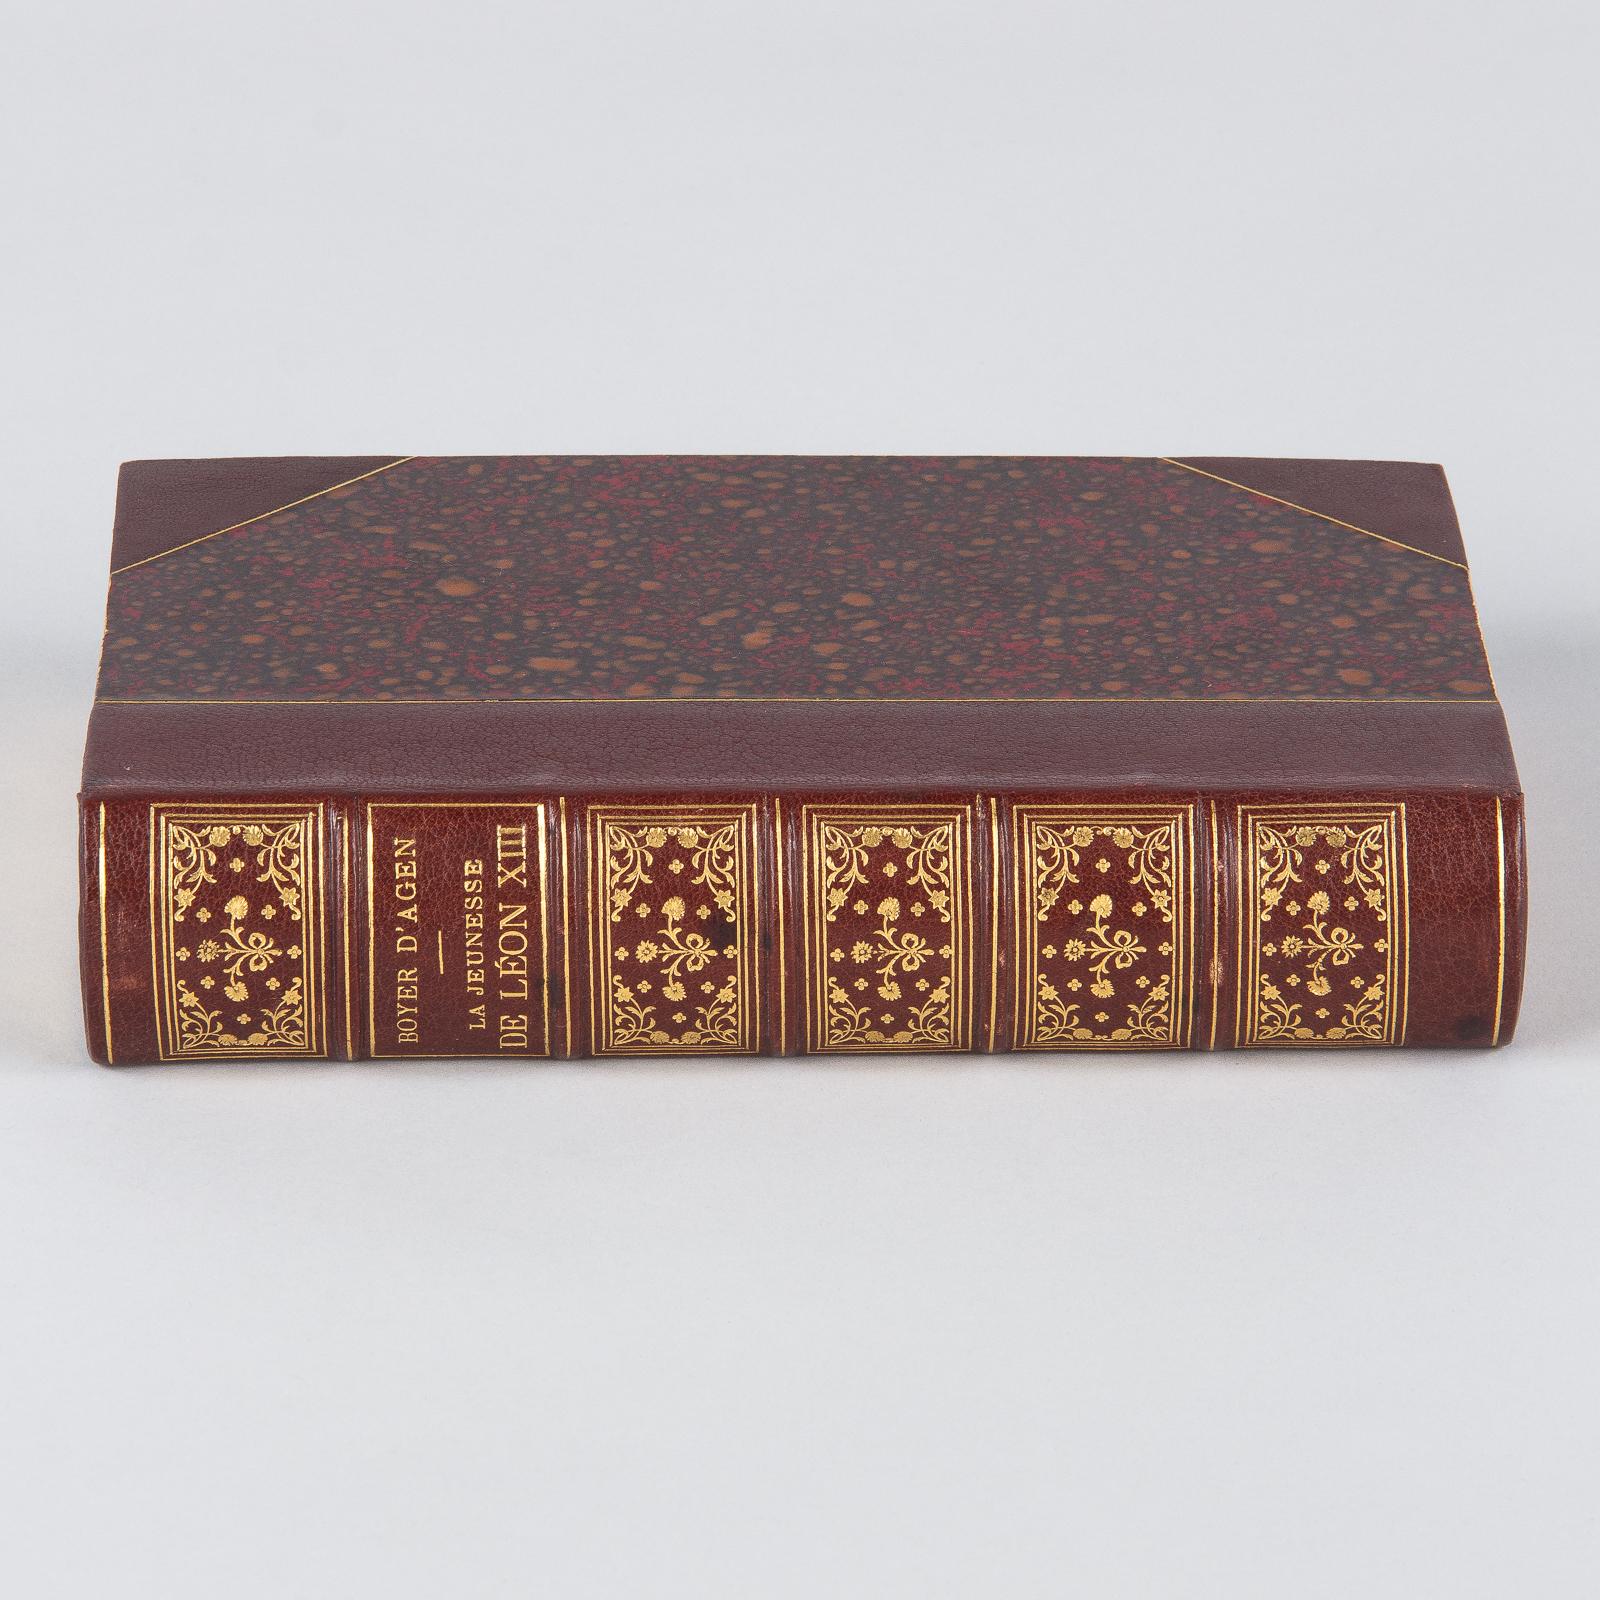 French Book, La Jeunesse de Leon XIII by Boyer d'Agen, 1896 10